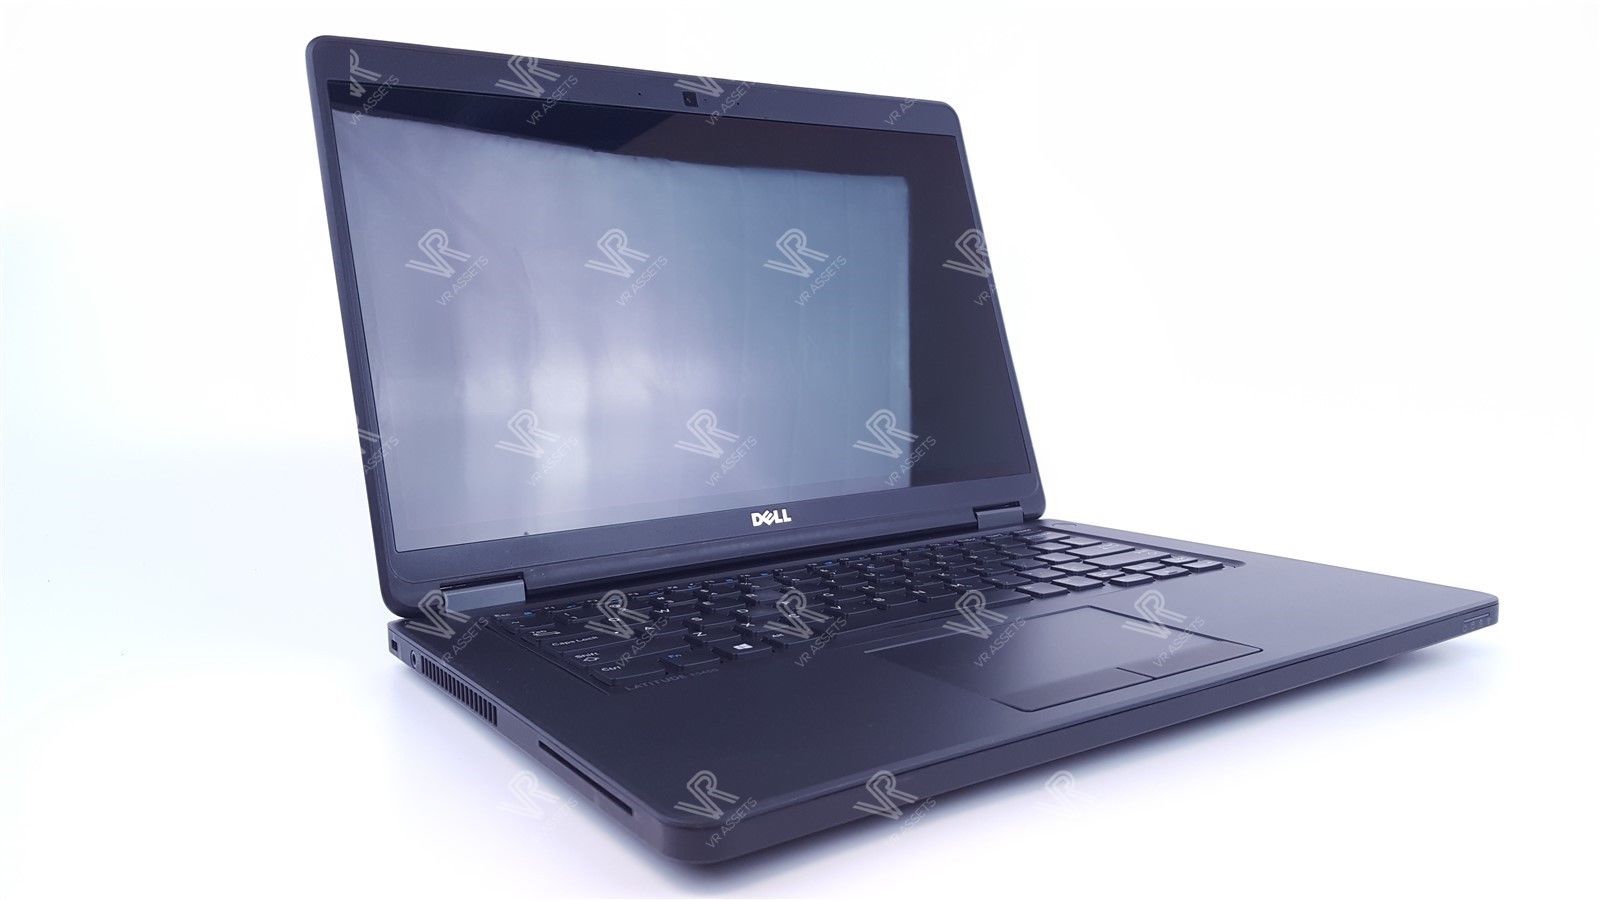 Dell Latitude E5450 14" I5-5300U 8Gb 500Gb HDD FHD Touchscreen Win 10 Pro Laptop